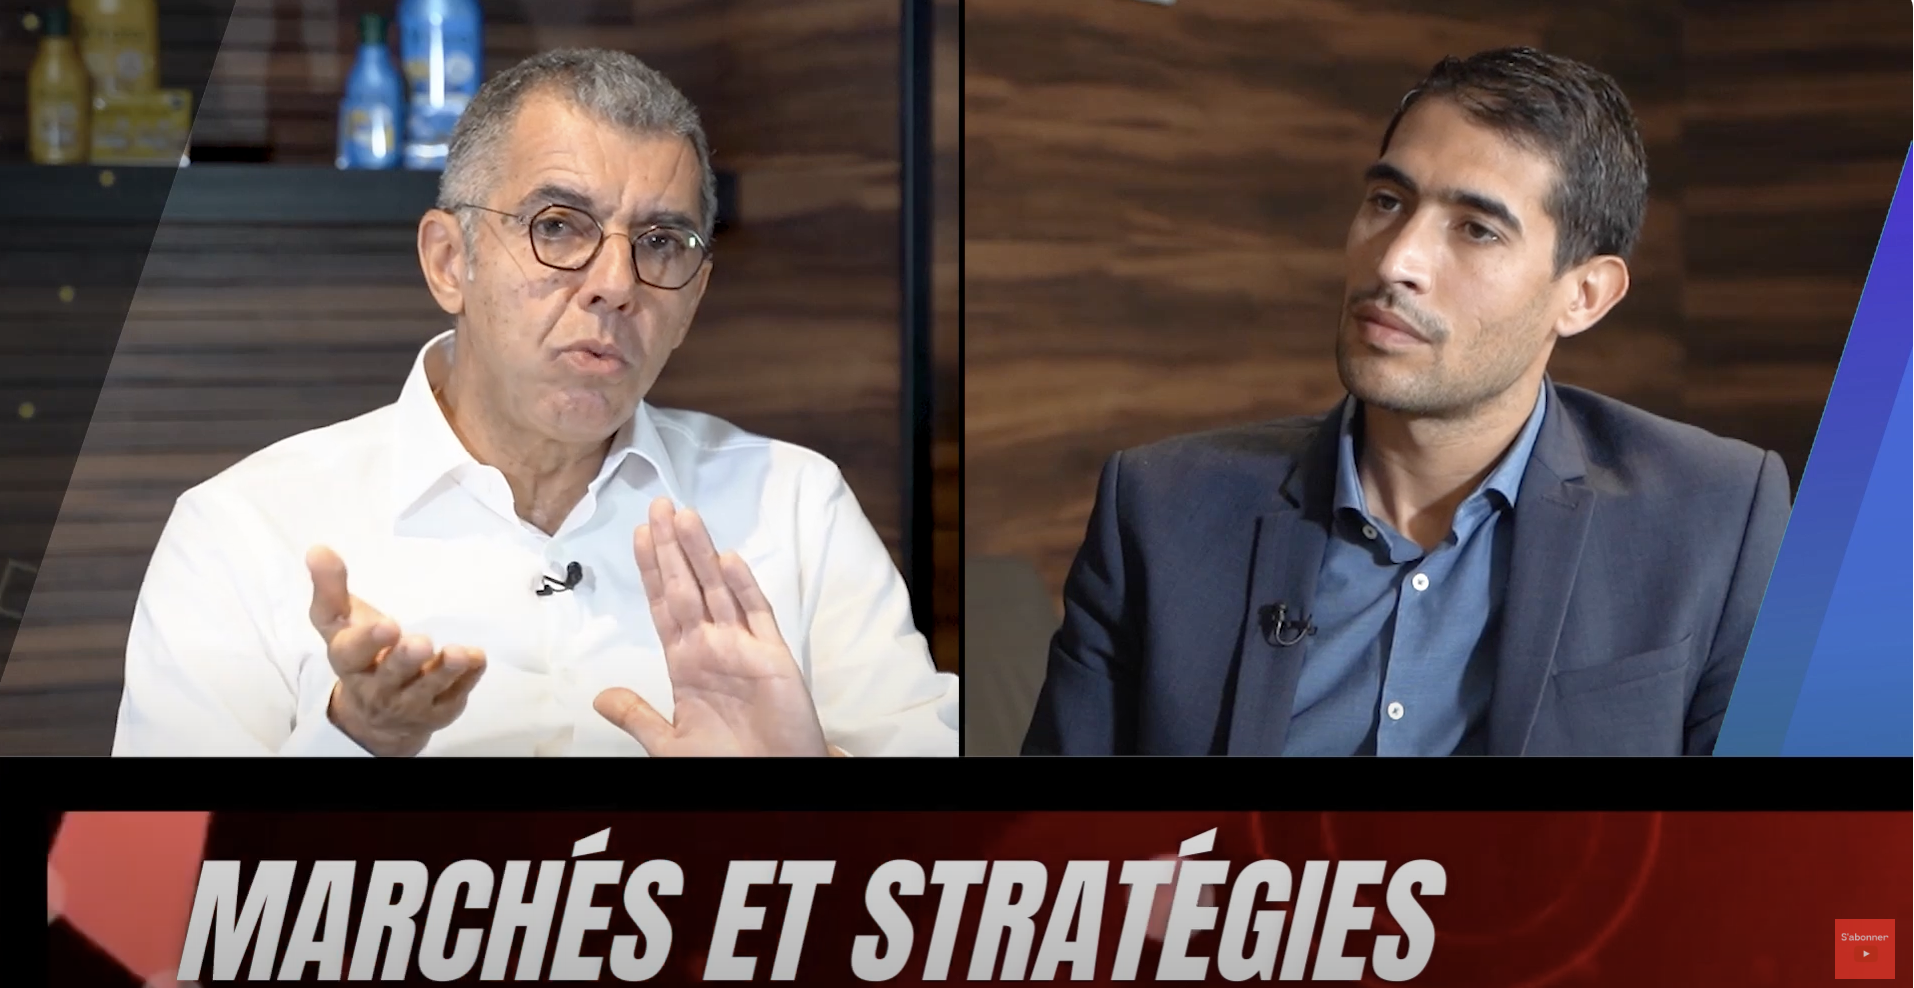 Marchés&Stratégies : Adil Douiri nous parle des ambitions de Mutandis à horizon 2027